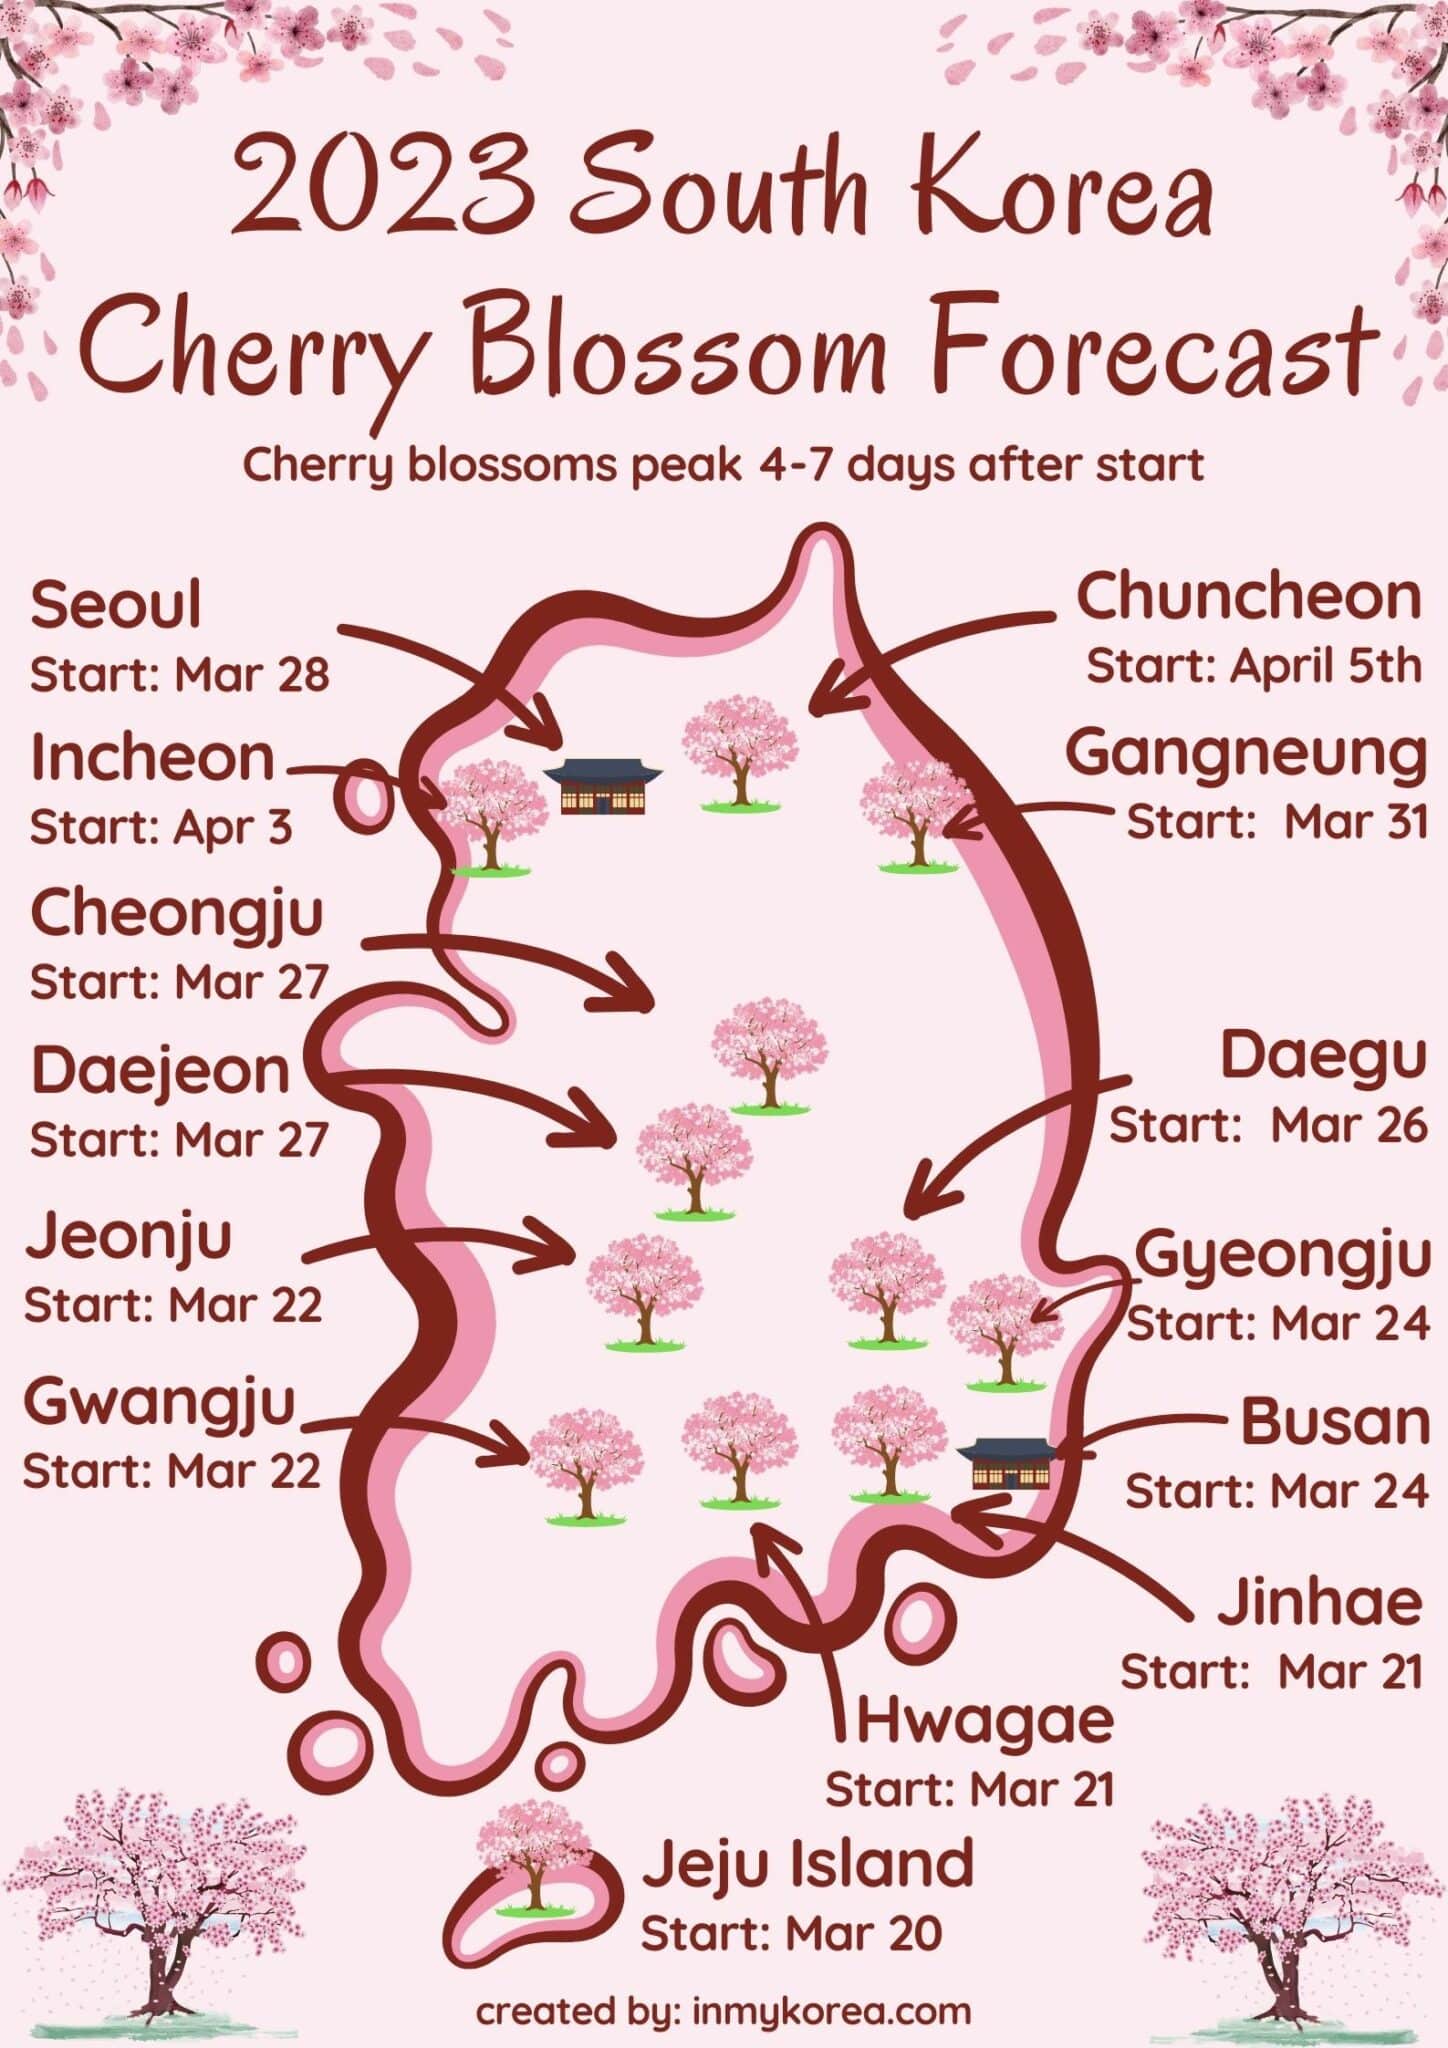 South Korea Cherry Blossom Forecast 2023 1448x2048 